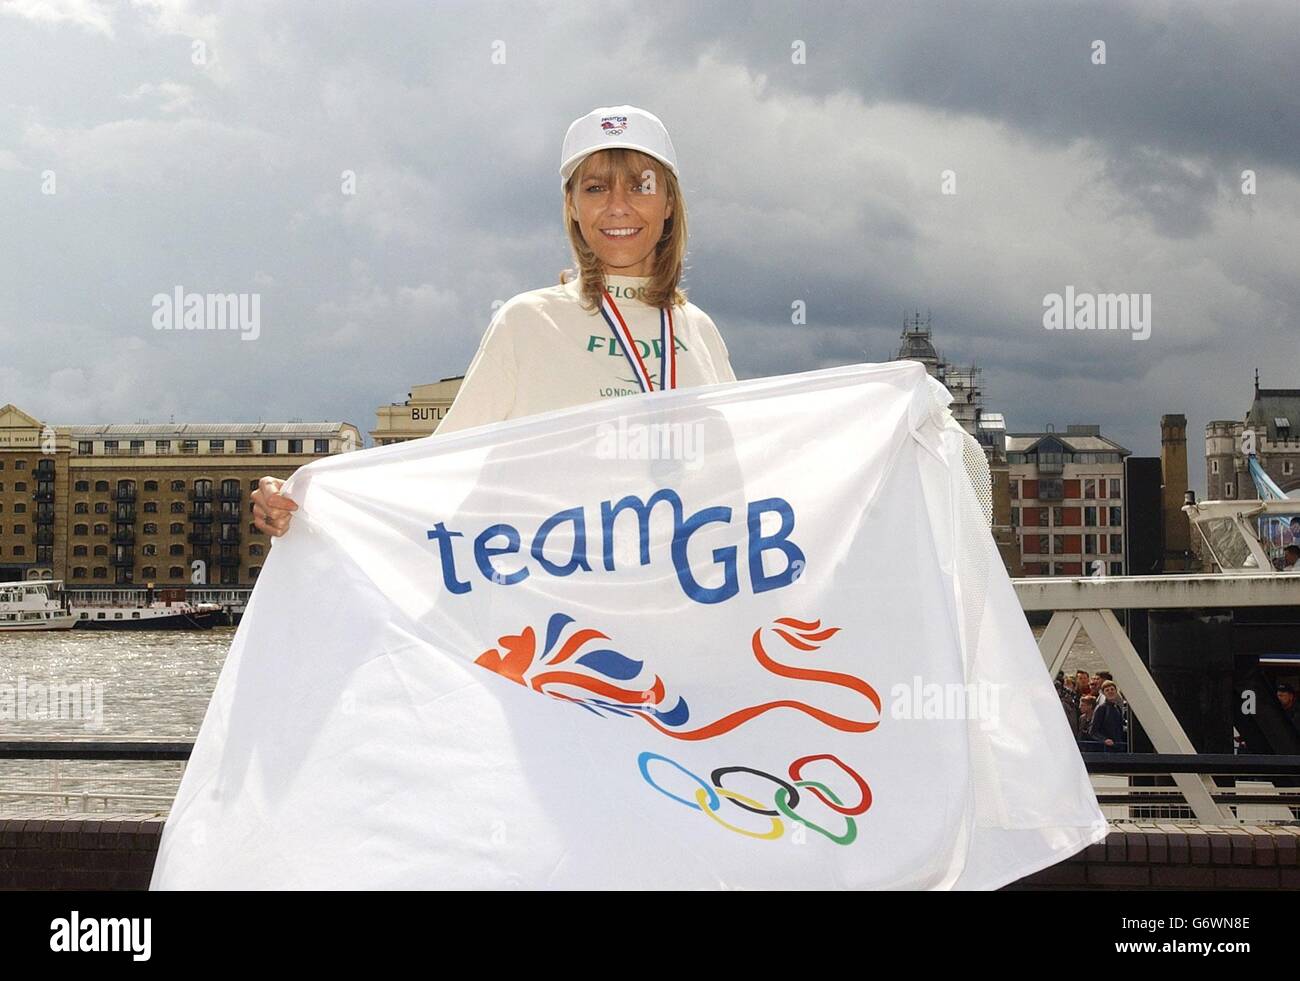 Tracey Morris, la prima donna britannica a finire nella maratona di Londra di ieri, celebra la sua selezione per le Olimpiadi, vicino a Tower Bridge, Londra. L'ottico di Leeds, di 36 anni, è stato selezionato per correre la maratona per la Gran Bretagna ad Atene, la British Olympic Association ha confermato oggi. Foto Stock